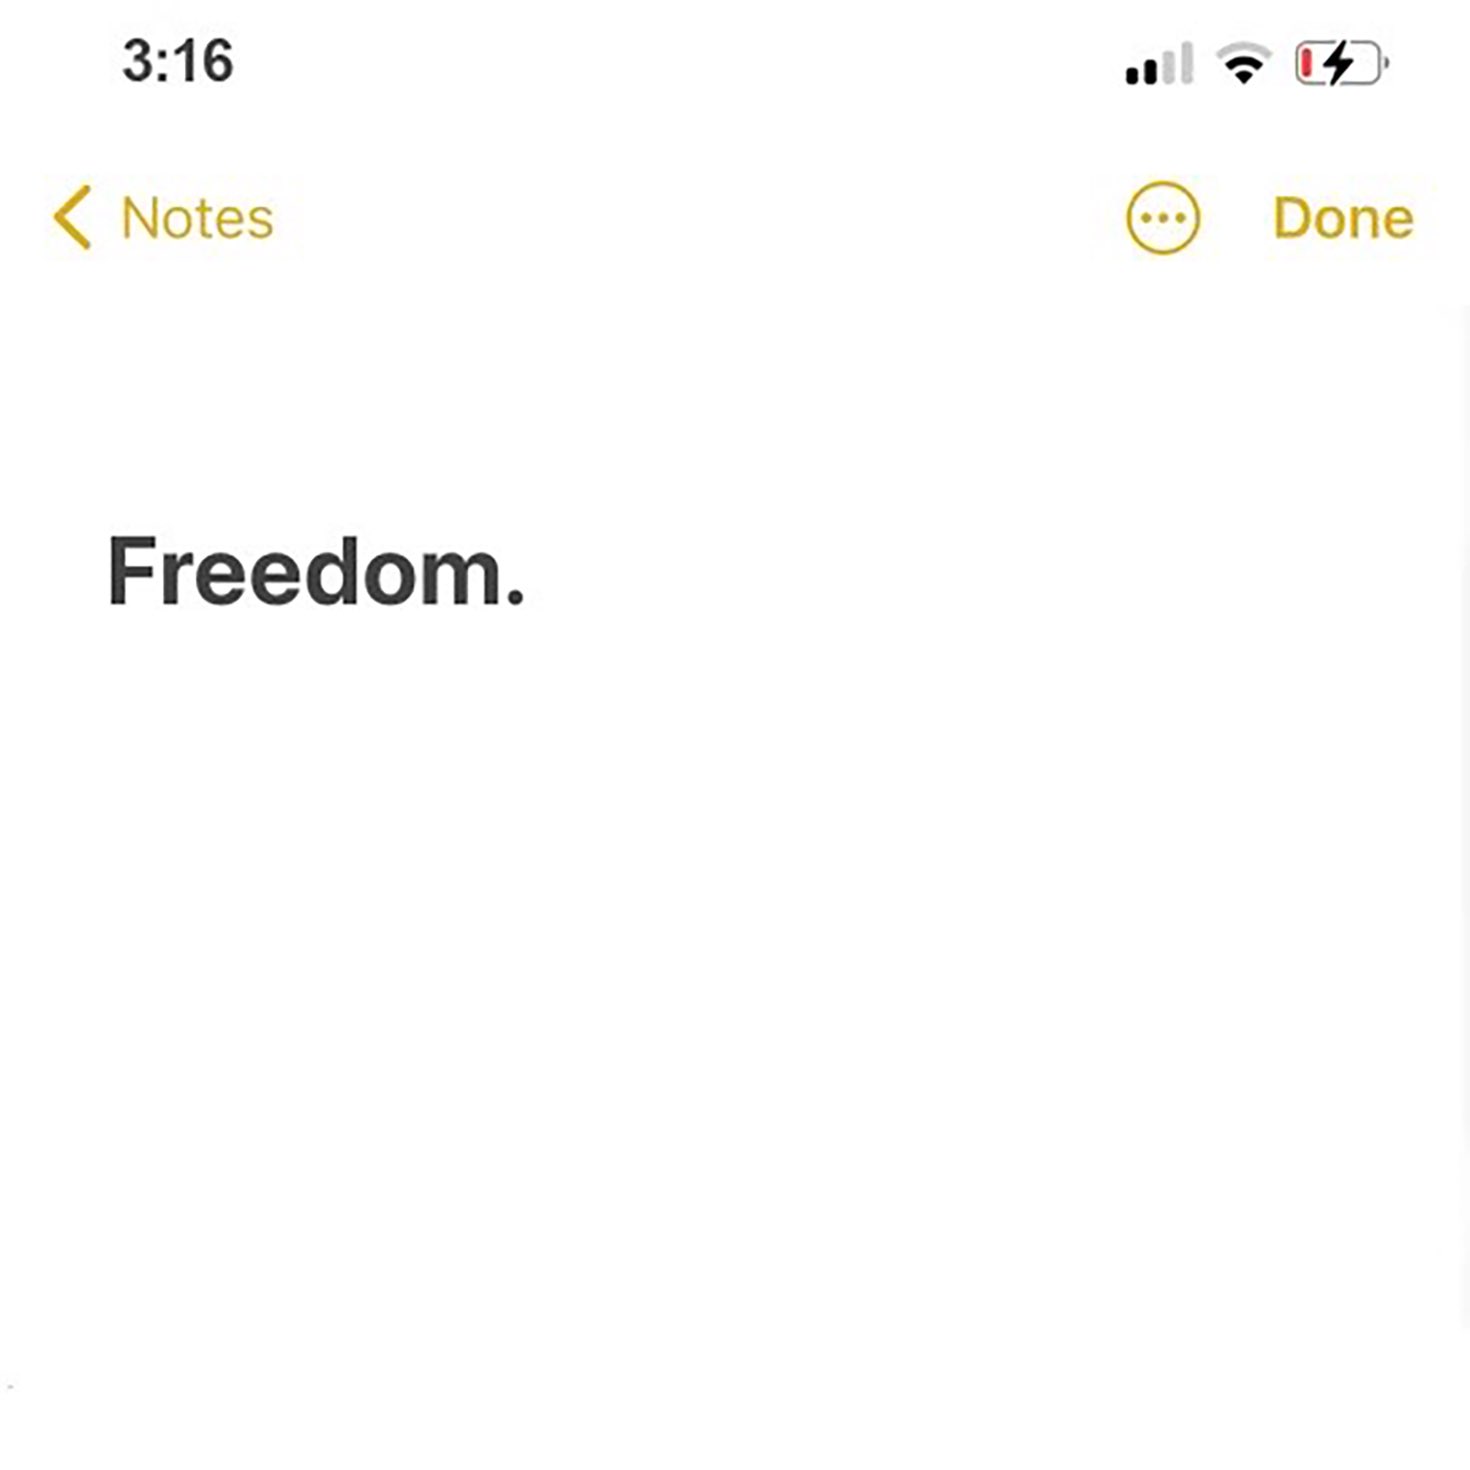 A imagem é a capa do disco Freedom., do cantor Justin Bieber. A imagem remete a um aplicativo de bloco de notas do celular, escrito “Freedom.” no canto superior esquerdo.